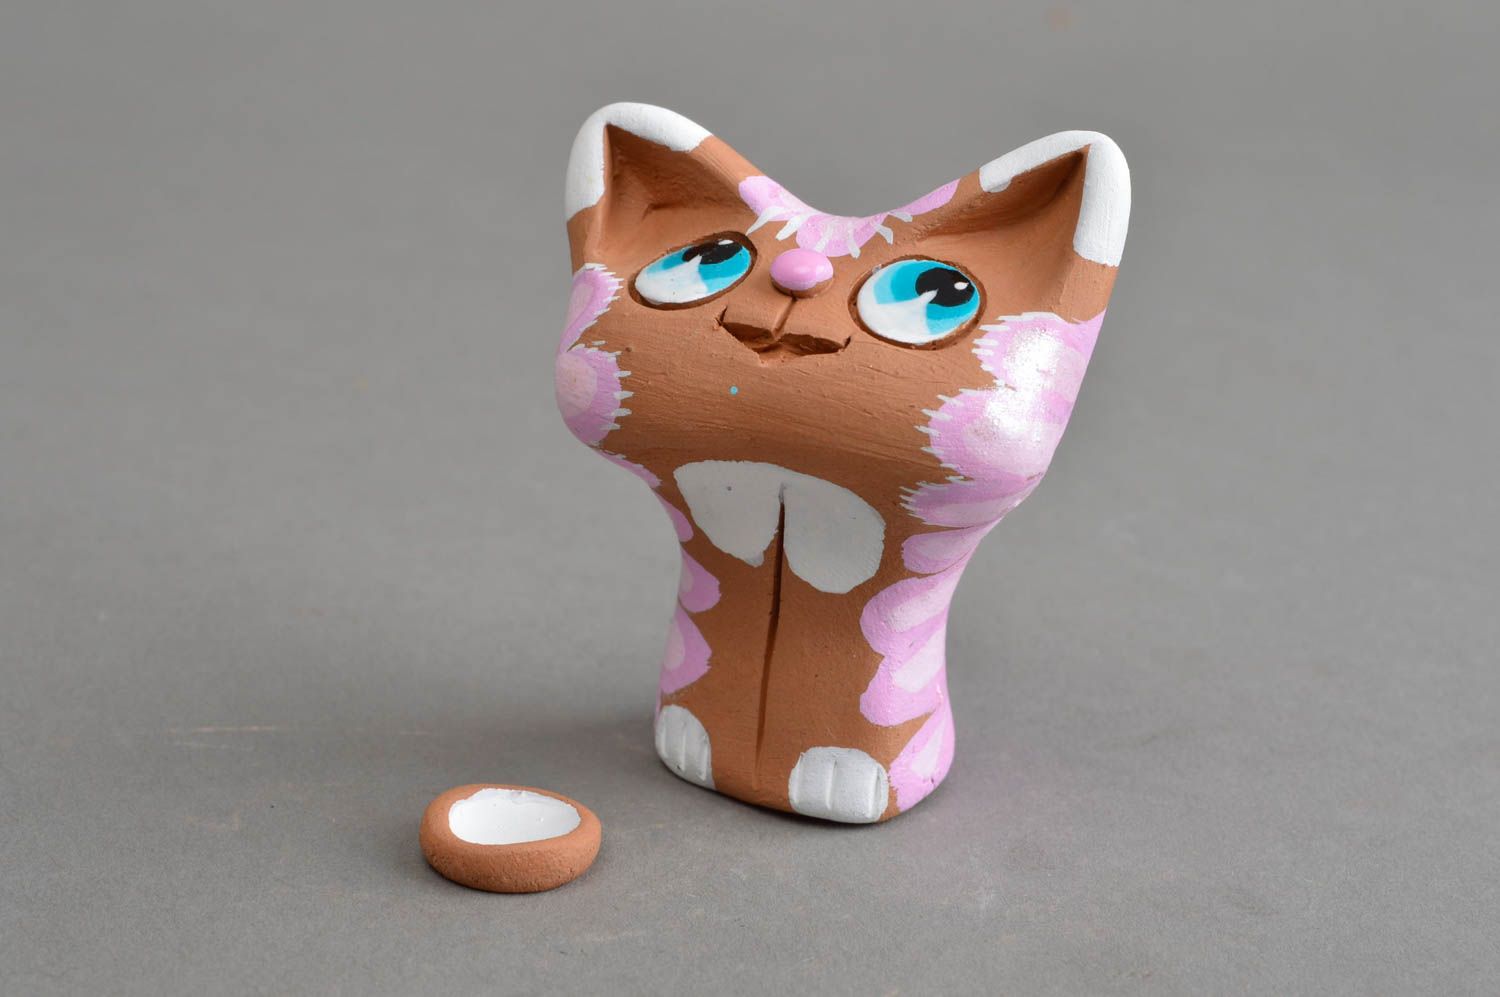 Глиняный расписанный сувенир-статуэтка ручной работы кошка с розовой холкой фото 2